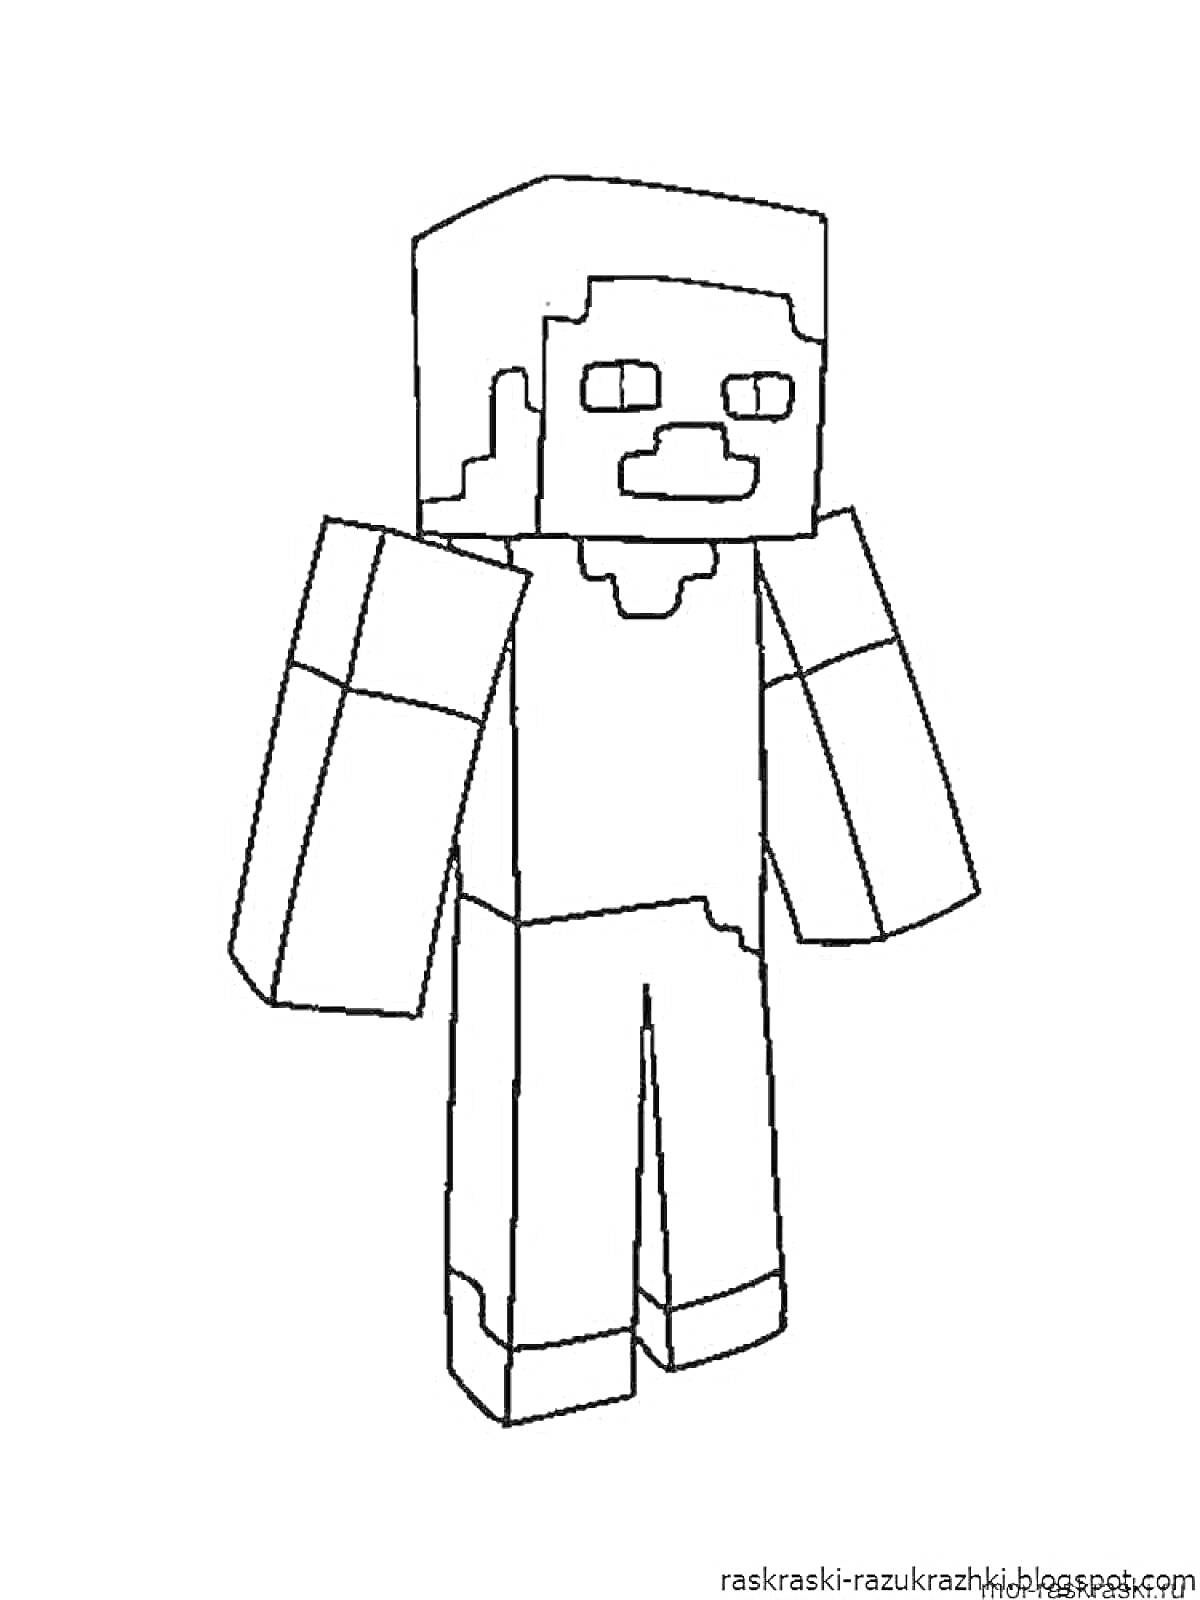 Стив из Minecraft; изображение полностью, персонаж стоит, руки опущены.